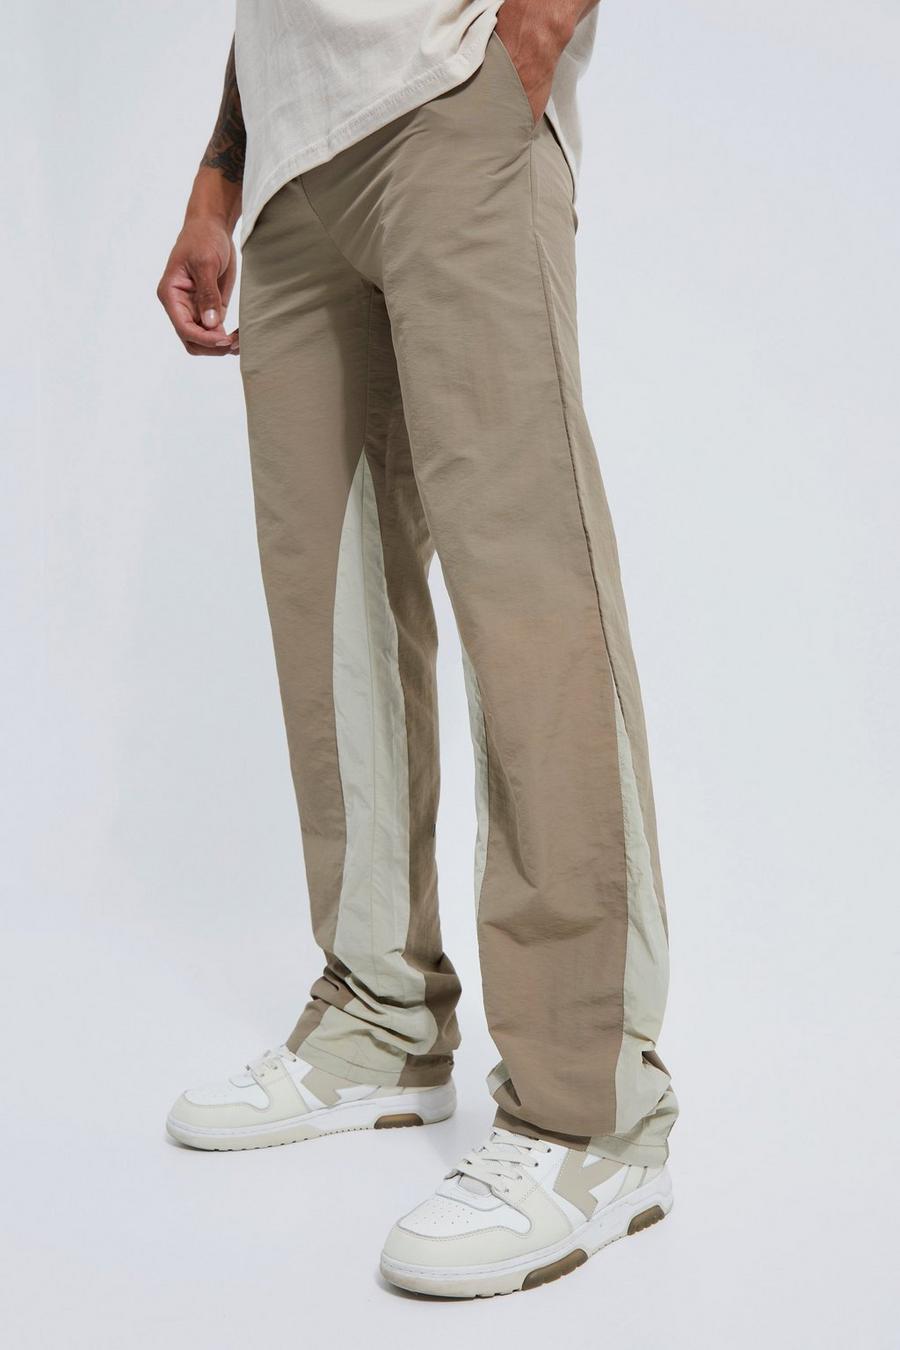 Lockere Hose mit Kontrast-Detail und elastischem Bund, Stone beige